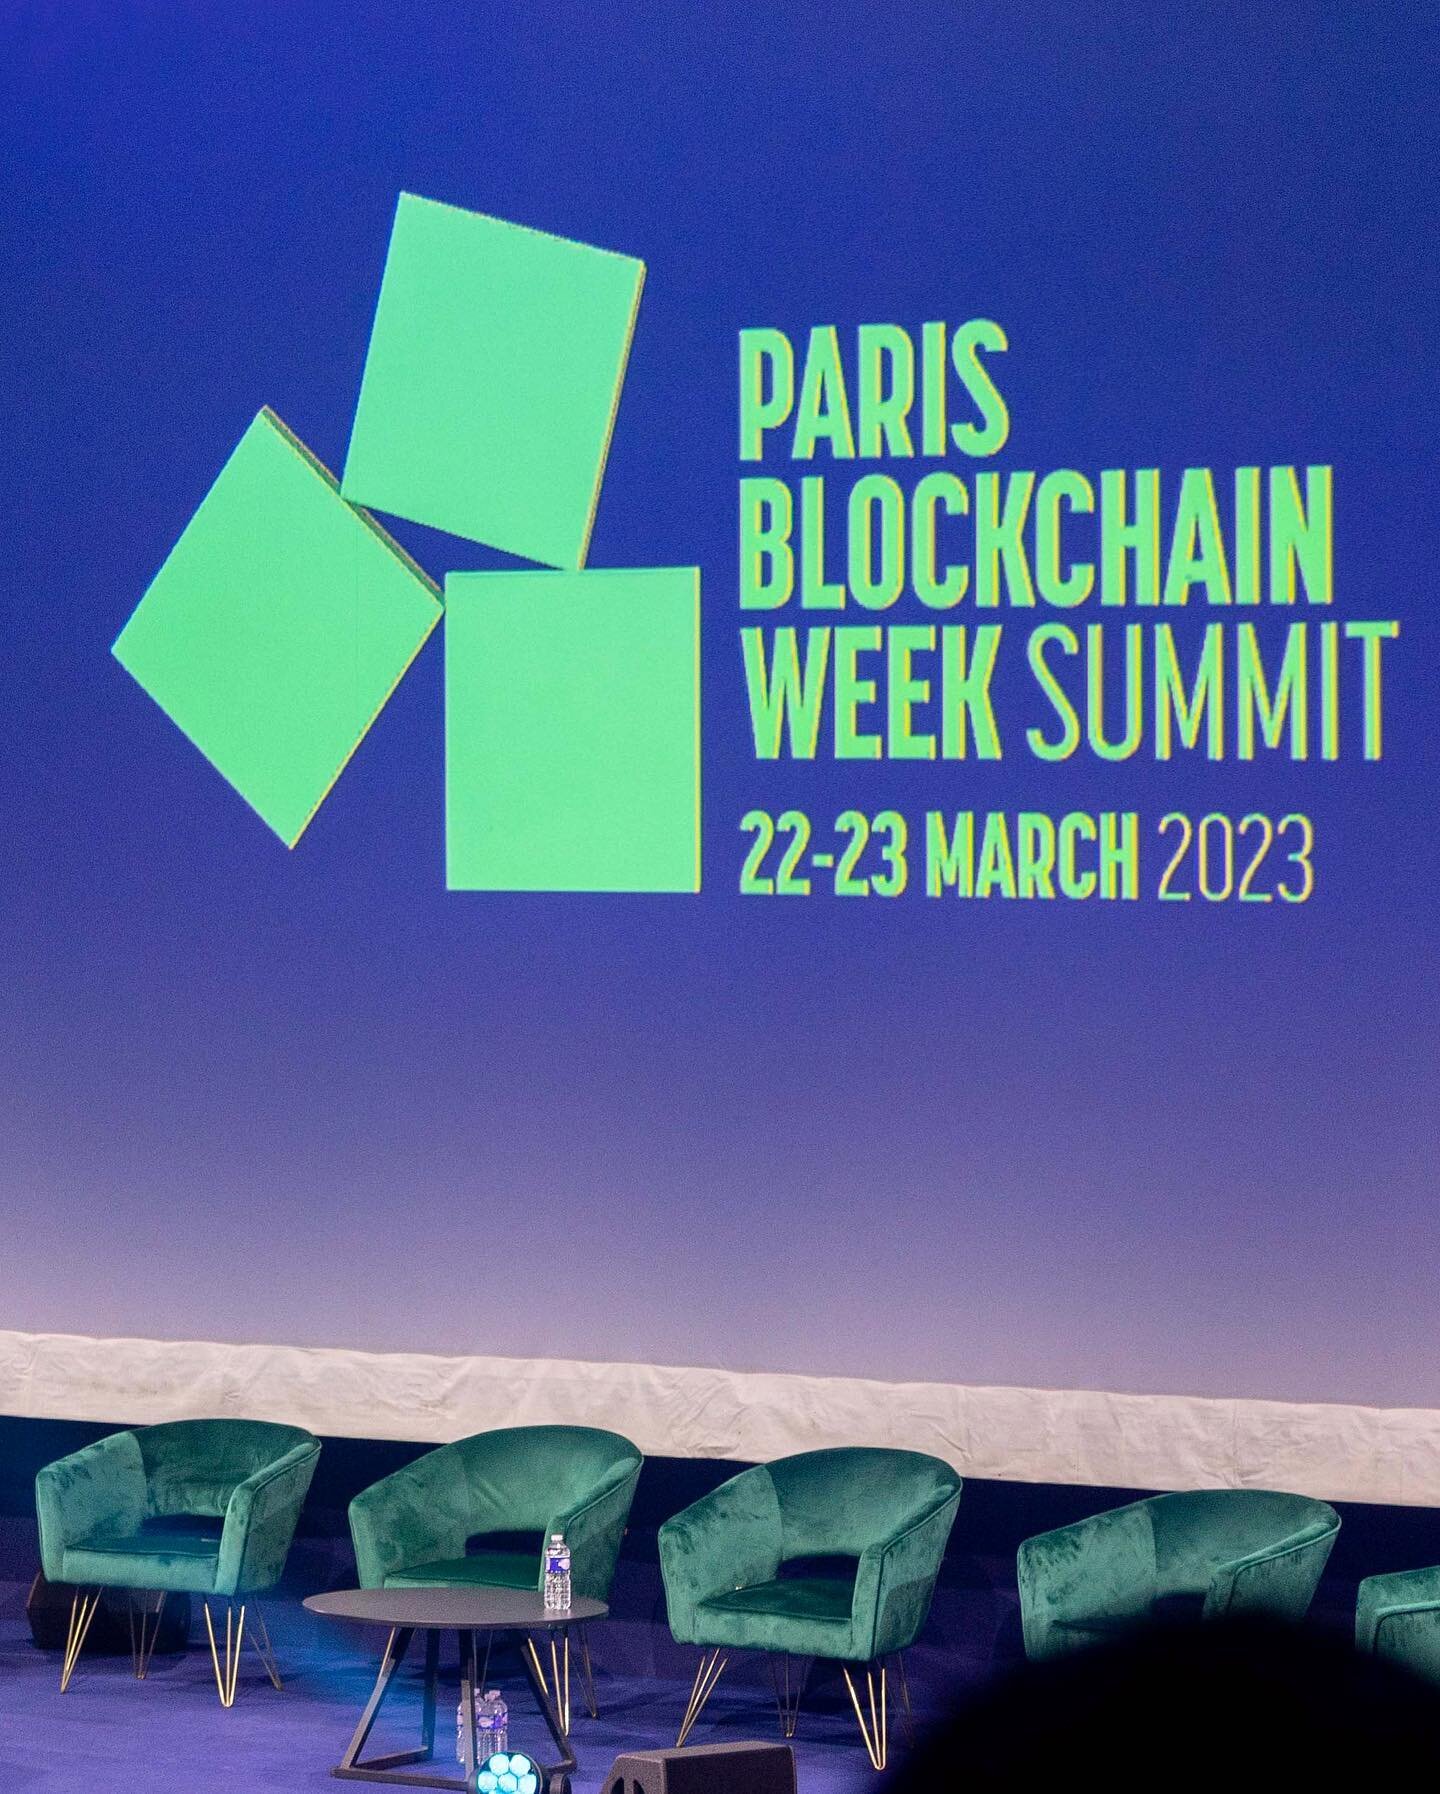 Conf&eacute;rences Paris Blockchain Week avec Joseph Lubin, co-fondateur d&rsquo;Ethereum ! 📸😎
#parisblockchainweek #reportage #reportagephoto #photographe #photographeparis #crypto #cryptomonnaie #ethereum #josephlubin #event #evenement #evenement